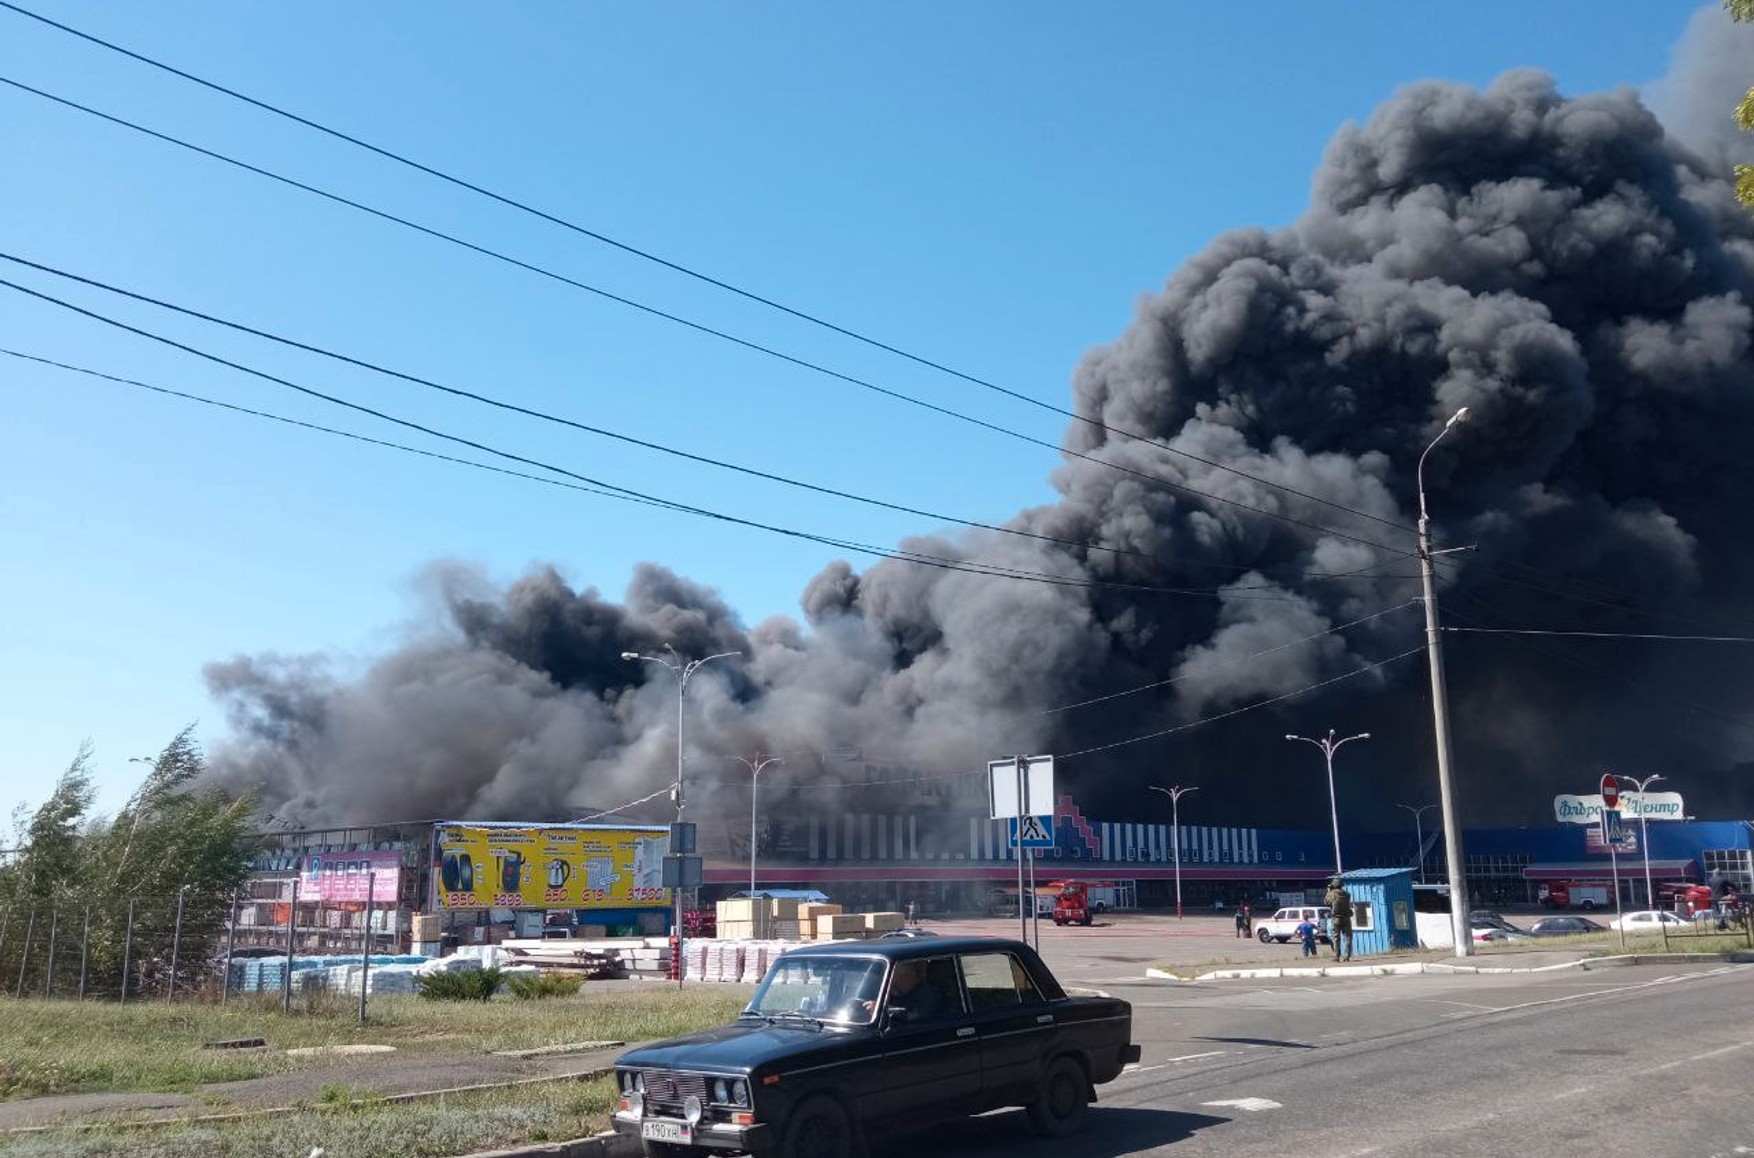 В Донецке под обстрел попал ТЦ «Галактика», в здании начался сильный пожар